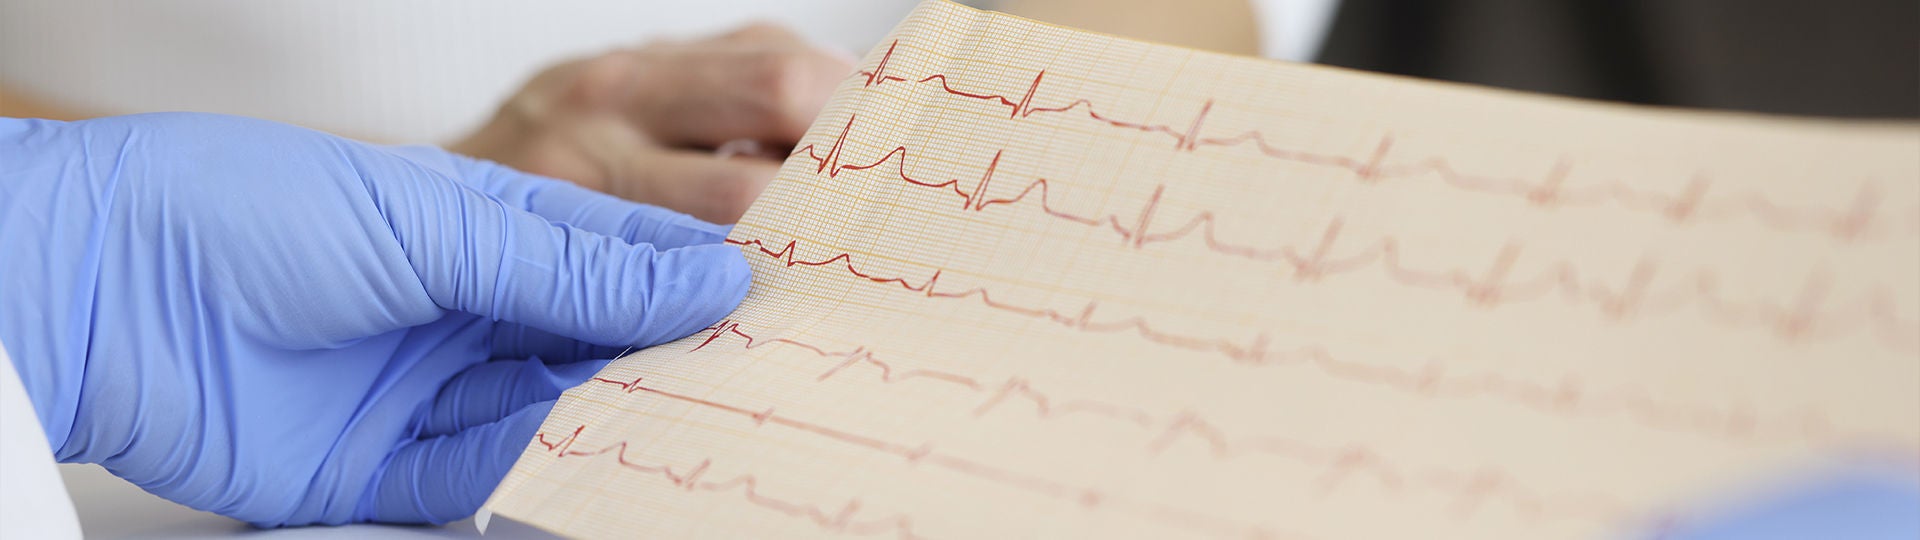 Ein EKG zeigt elektrische Signale des Herzens.